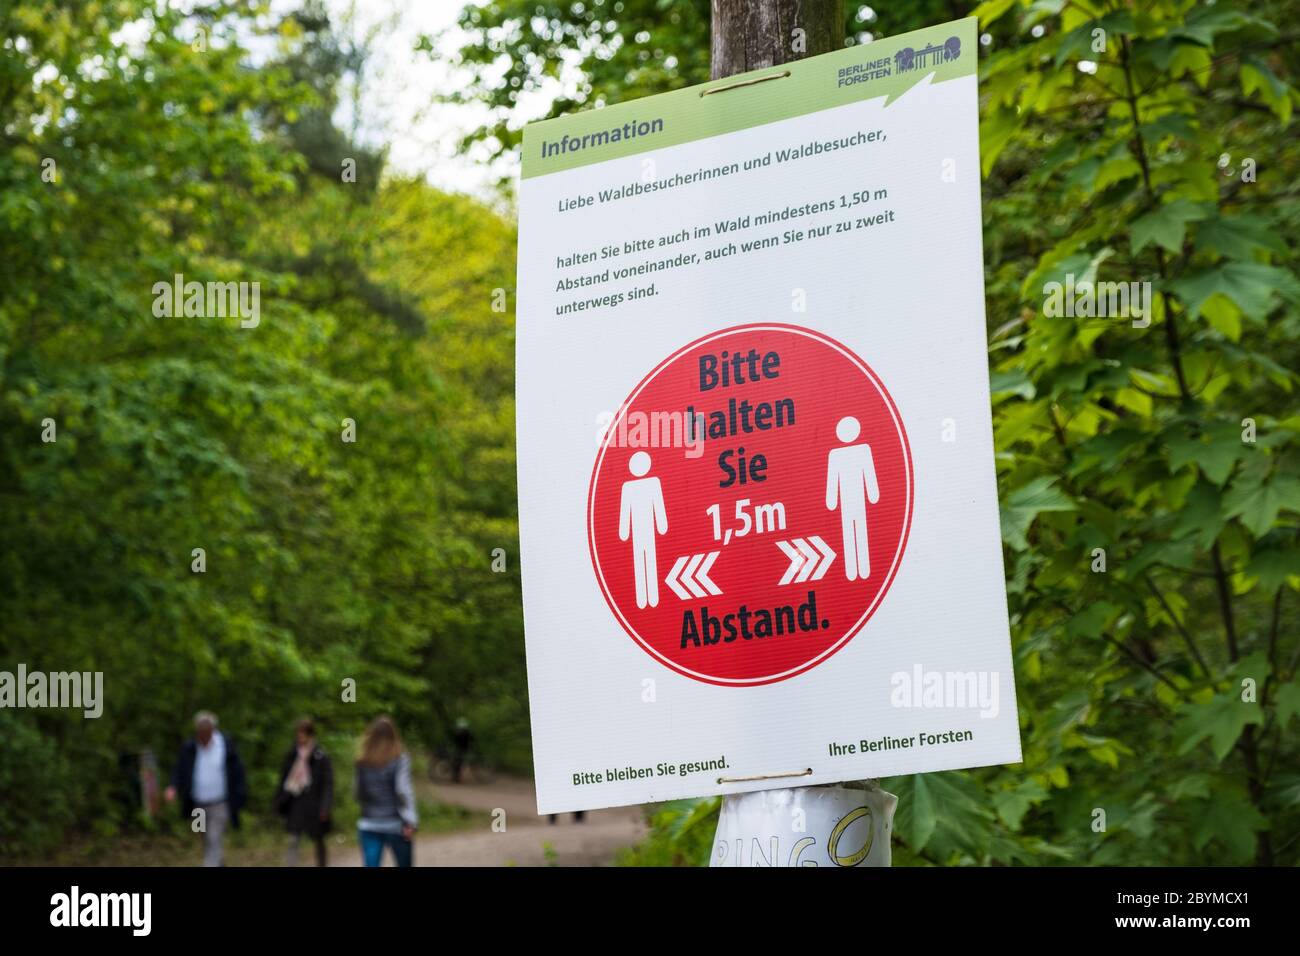 25.04.2020, Berlín, Berlín, Alemania - el tablero de información de los Bosques de Berlín señala la regla de la distancia cuando visita el Grunewald en tiempos de la Cob Foto de stock